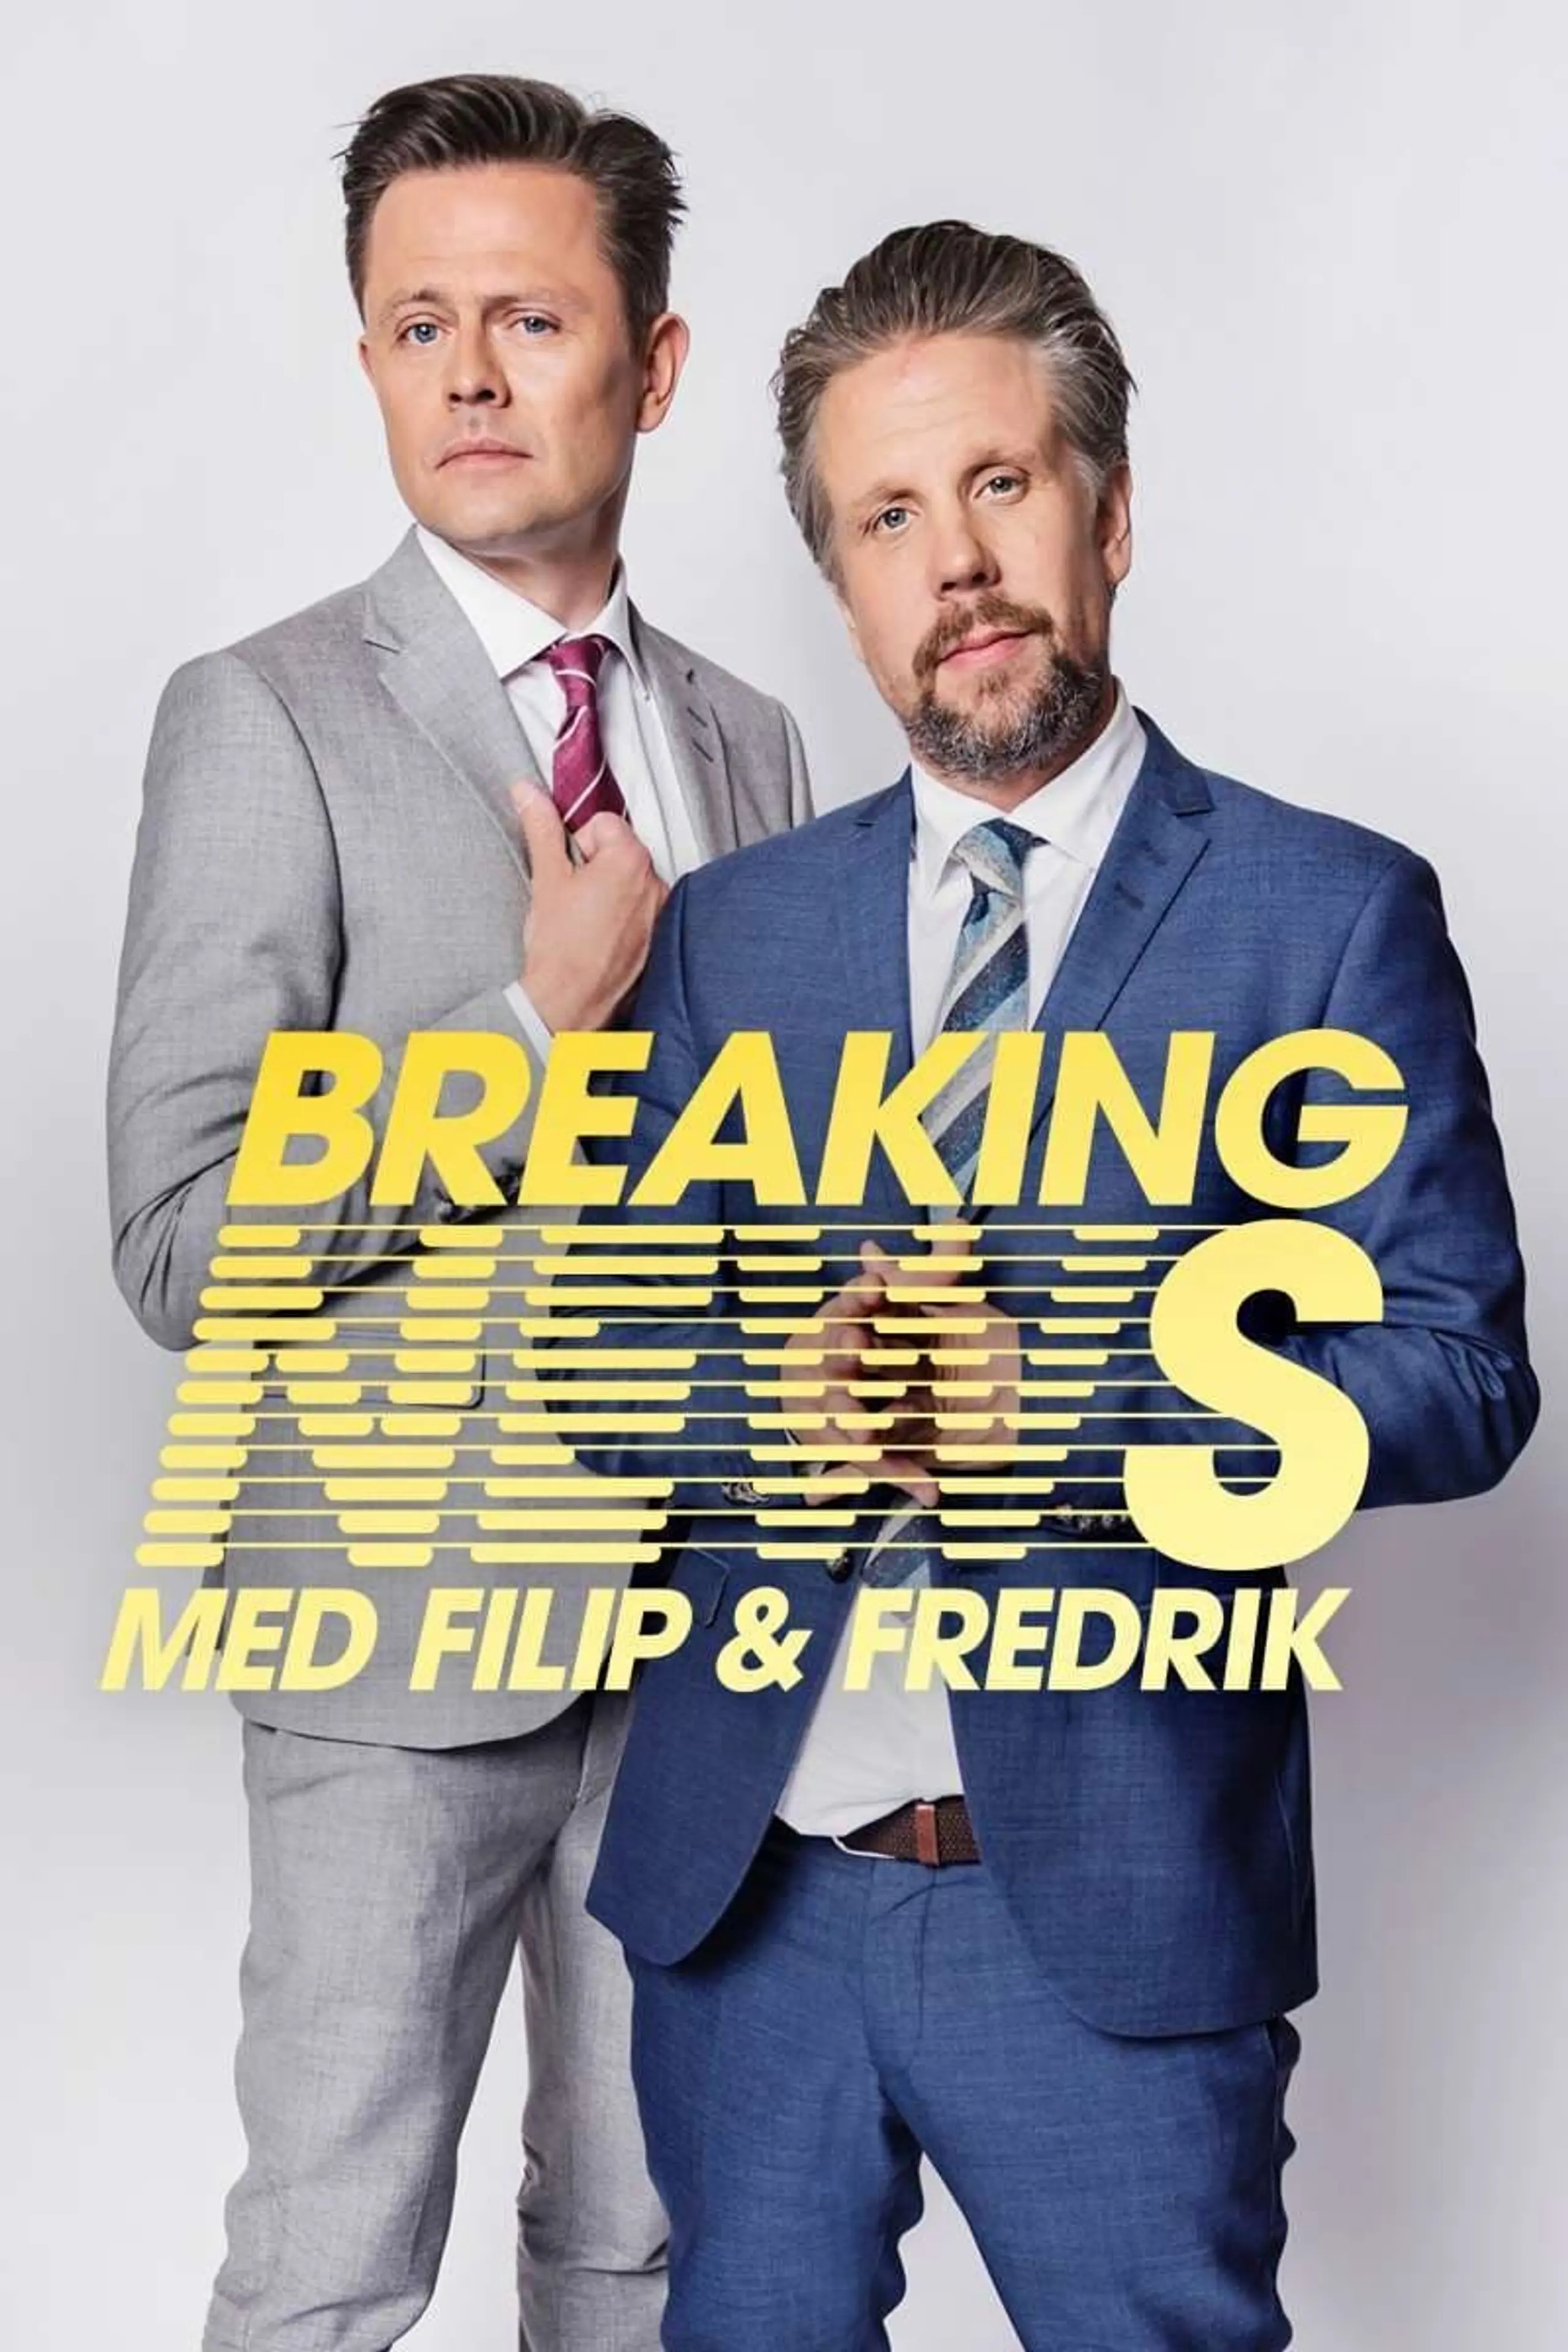 Breaking News med Filip & Fredrik